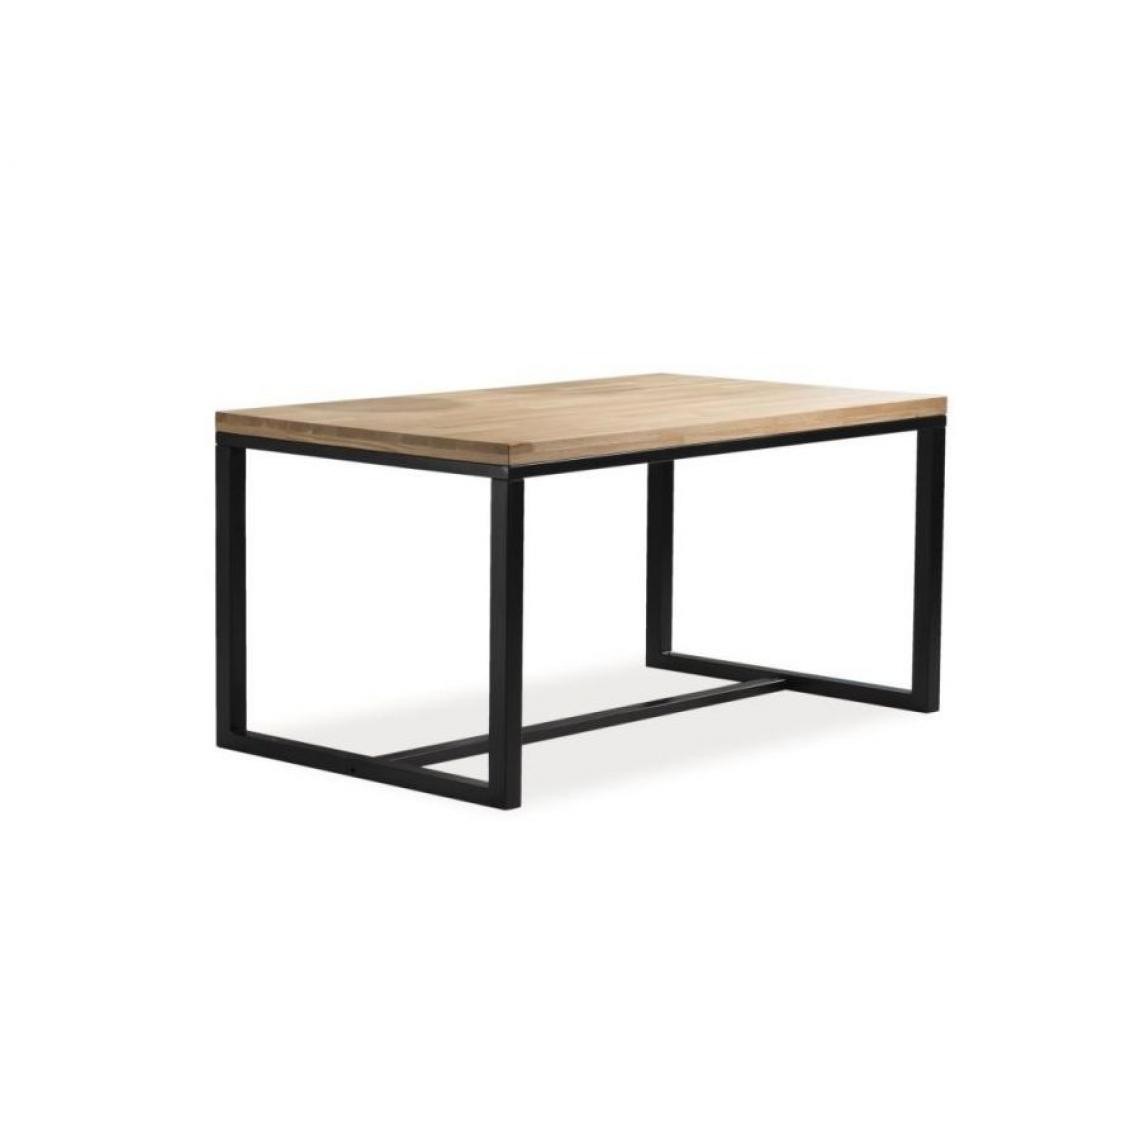 Hucoco - LORAO - Table de style loft salle à manger - 150X90x78 cm - Plateau en bois - Table fixe pour le salon - Chêne - Tables à manger